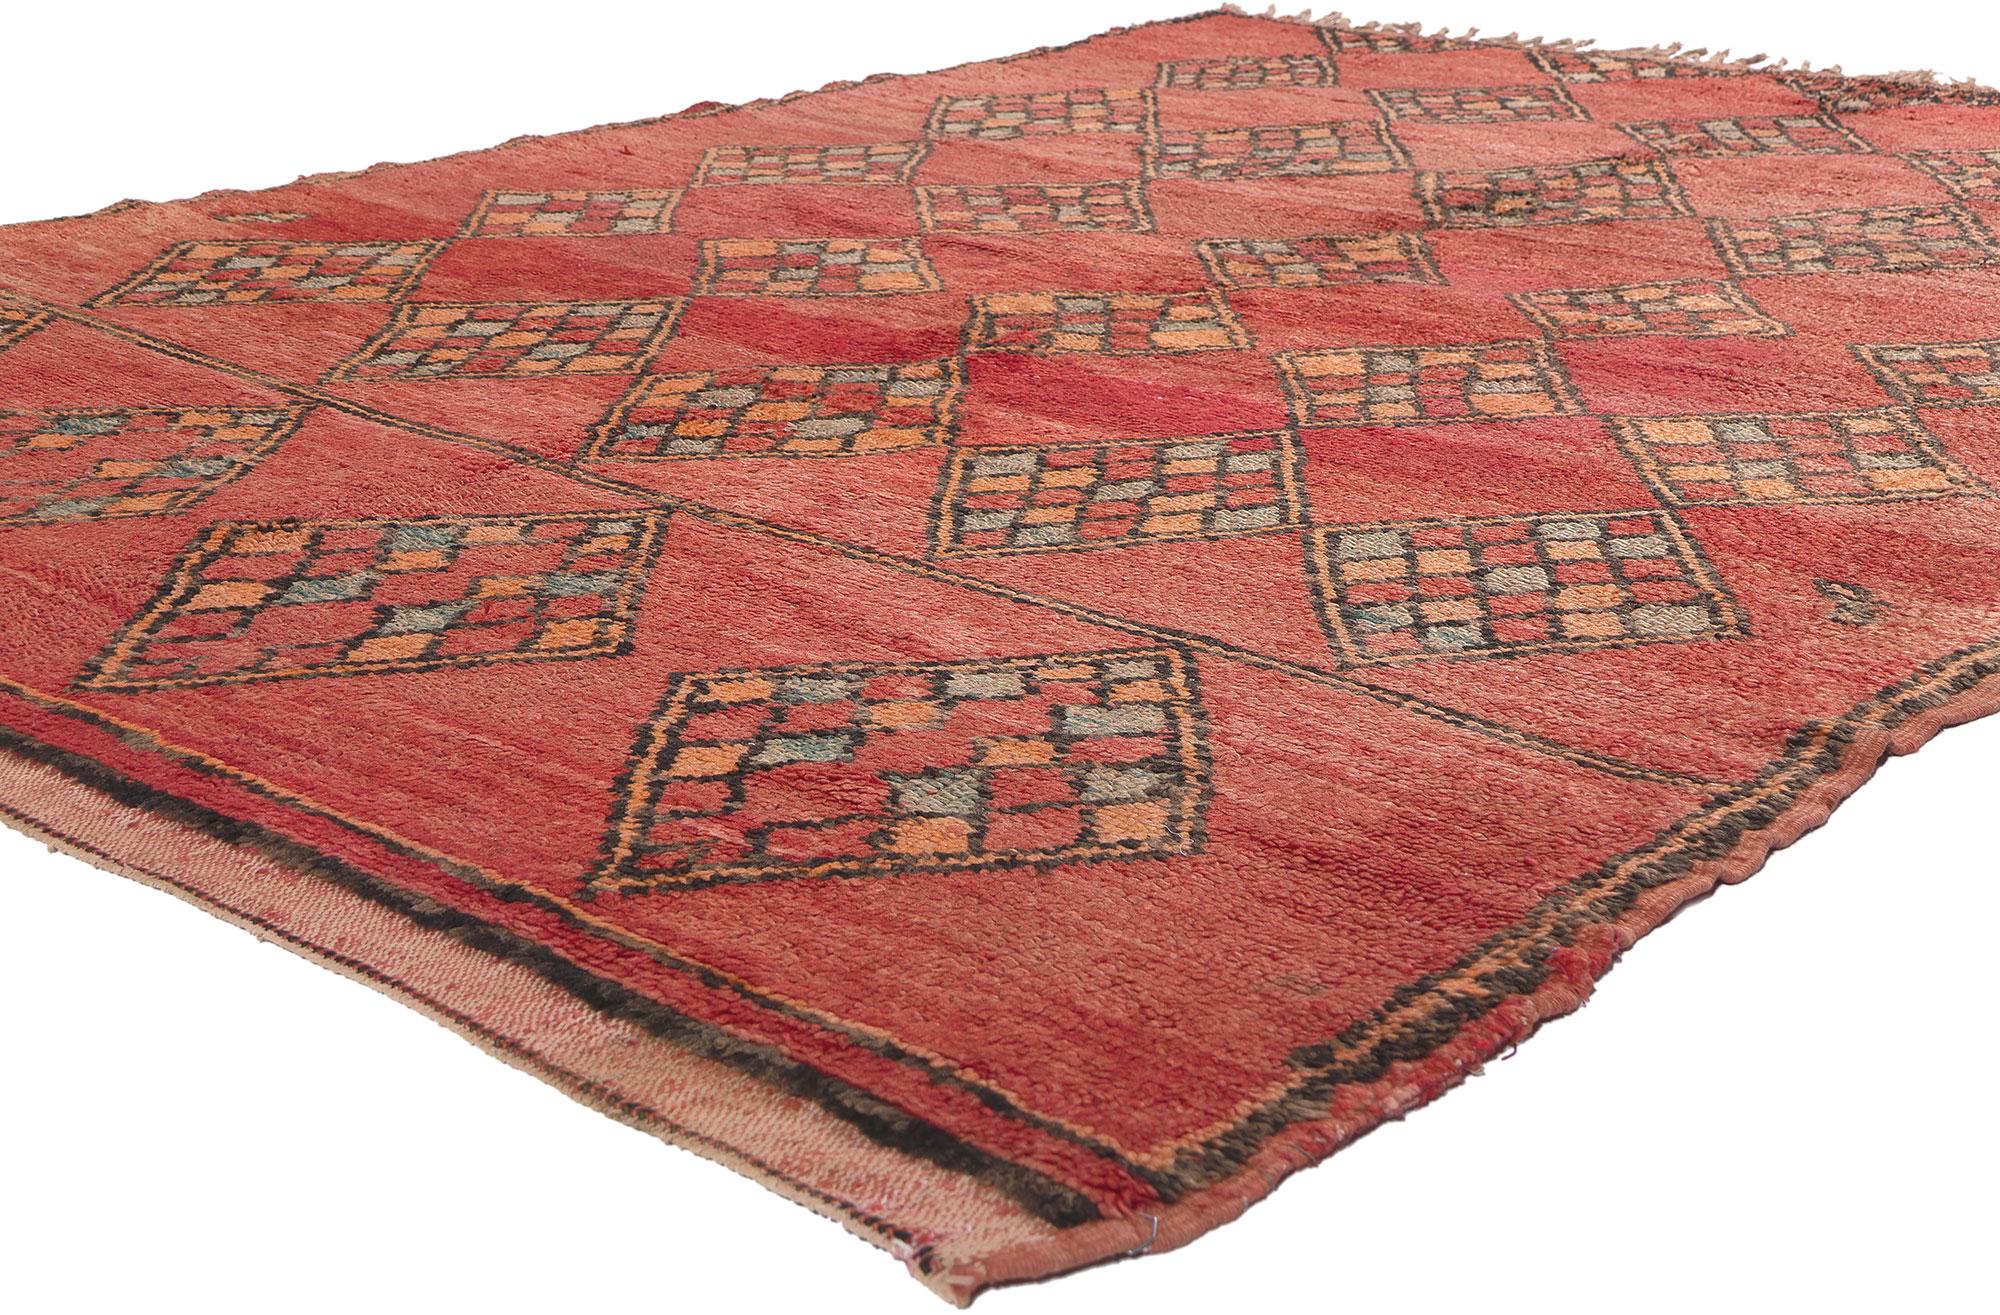 20171 Tapis marocain Boujad rouge vintage, 05'10 x 08'05. Dans le domaine du style d'intérieur bohème, découvrez la fusion enchanteresse avec le charme nomade dans ce tapis marocain Boujad vintage en laine noué à la main. Le design captivant des